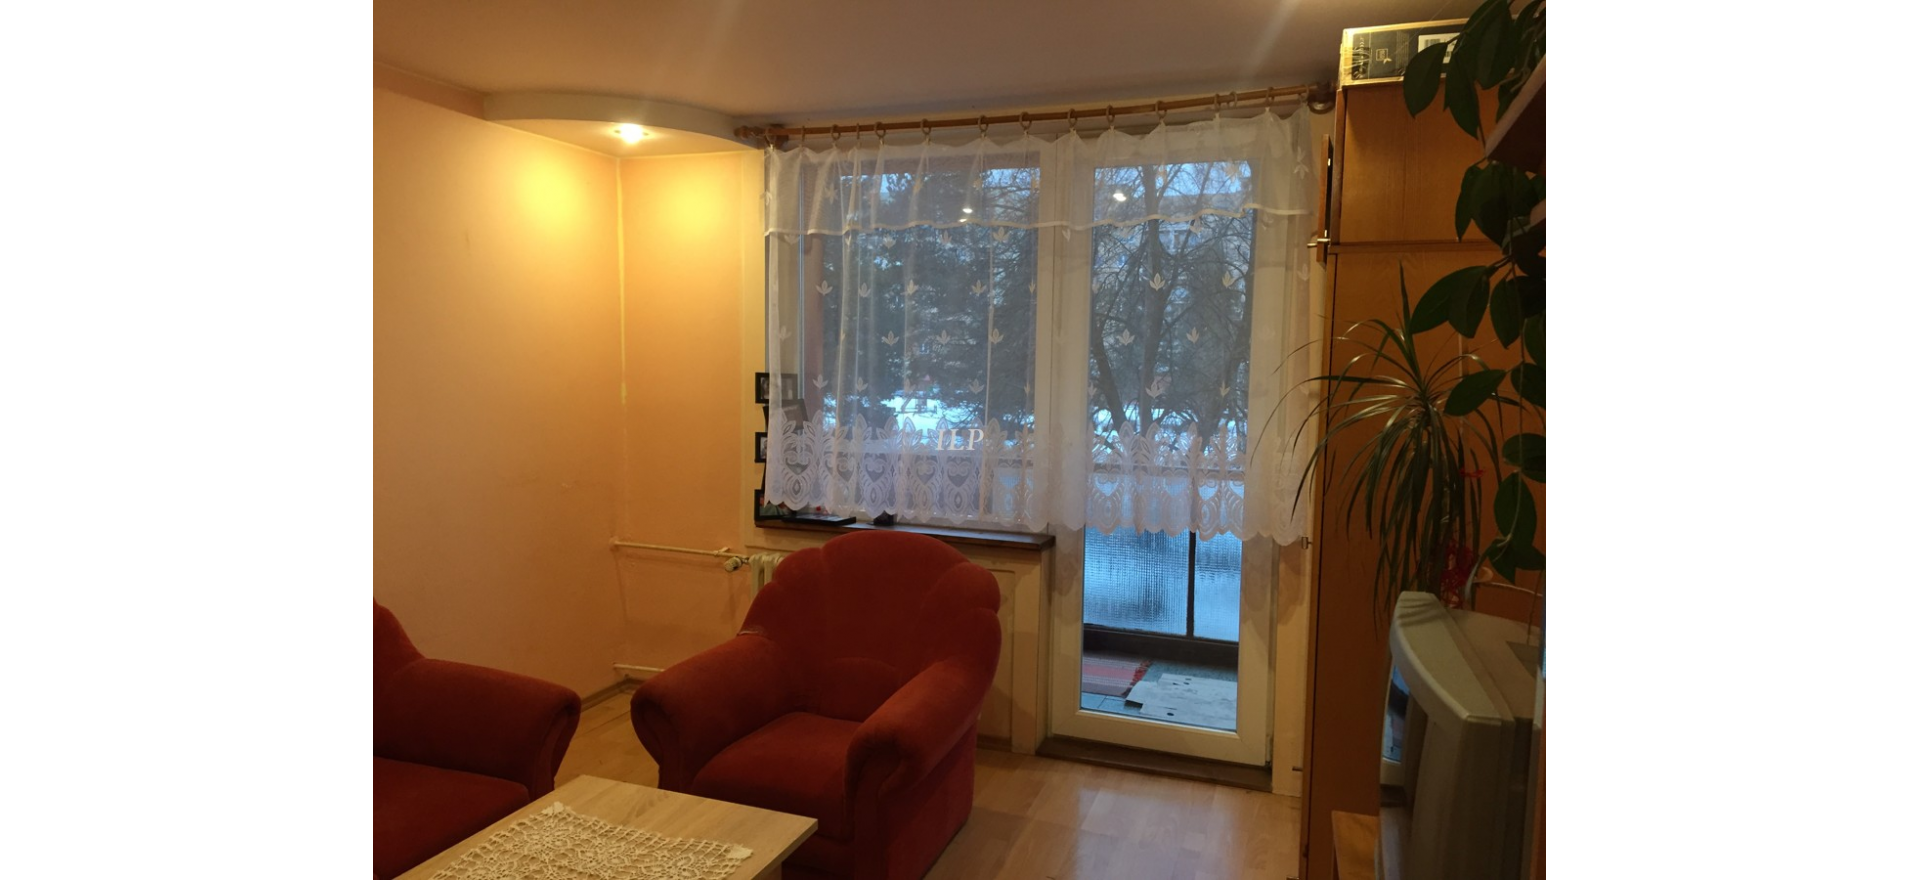 3 - izbový byt na Tarči s loggiou, po rekonštrukcii